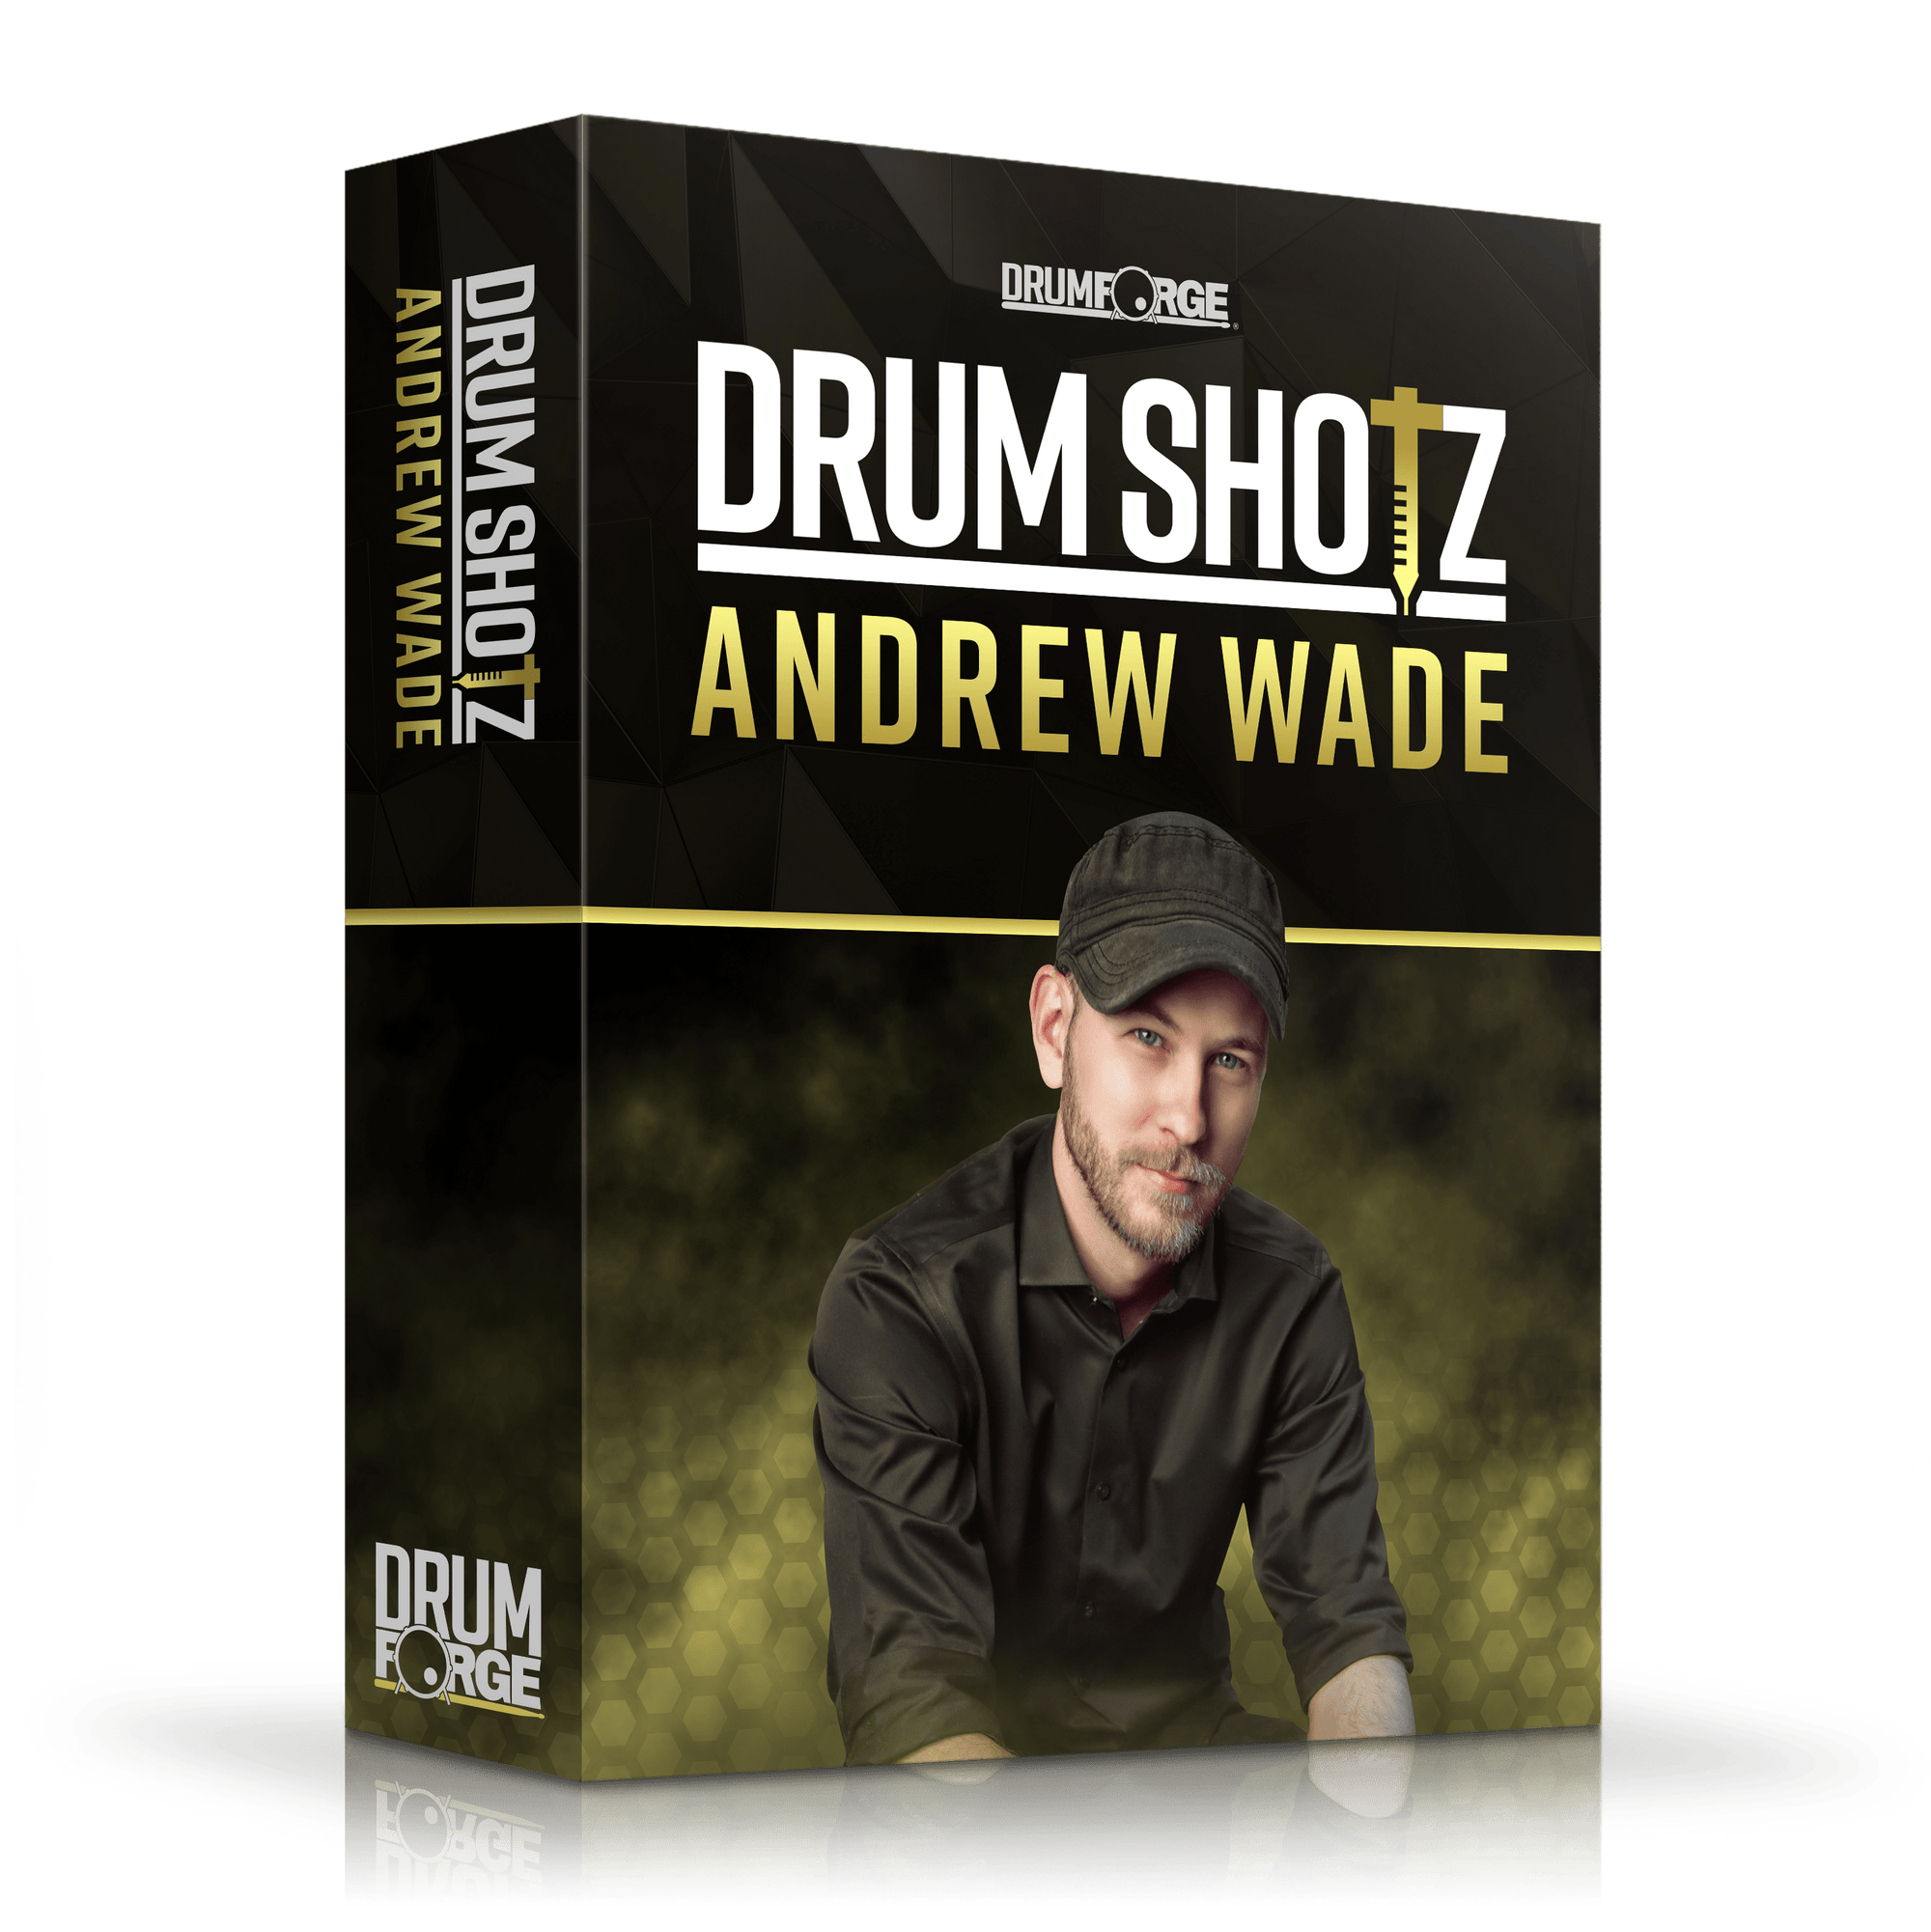 Drumshotz Andrew Wade